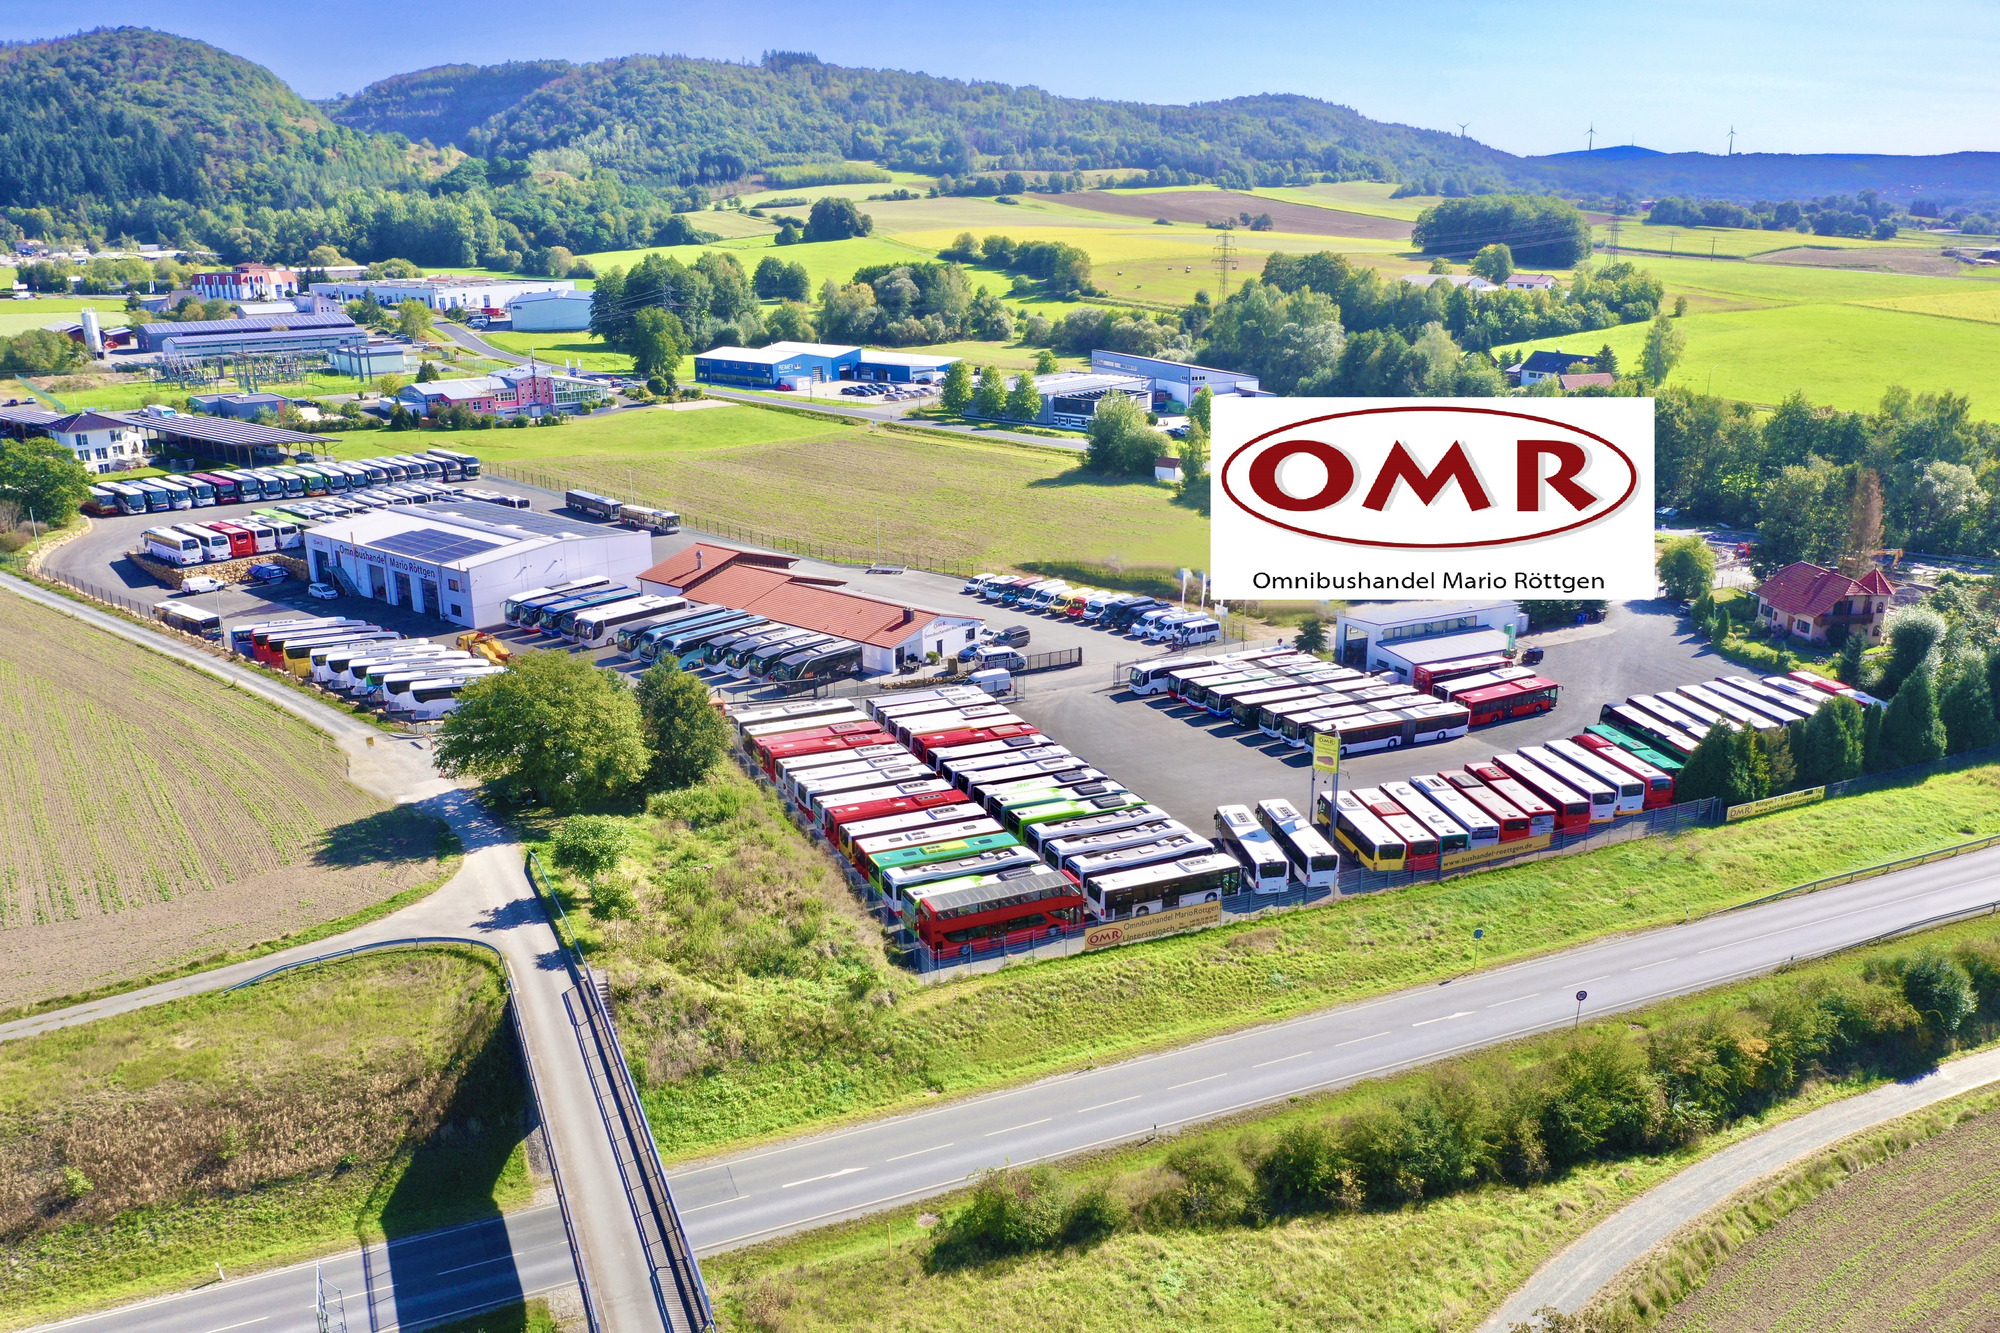 OMR Omnibushandel Mario Röttgen GmbH - Busser DAF undefined: billede 1